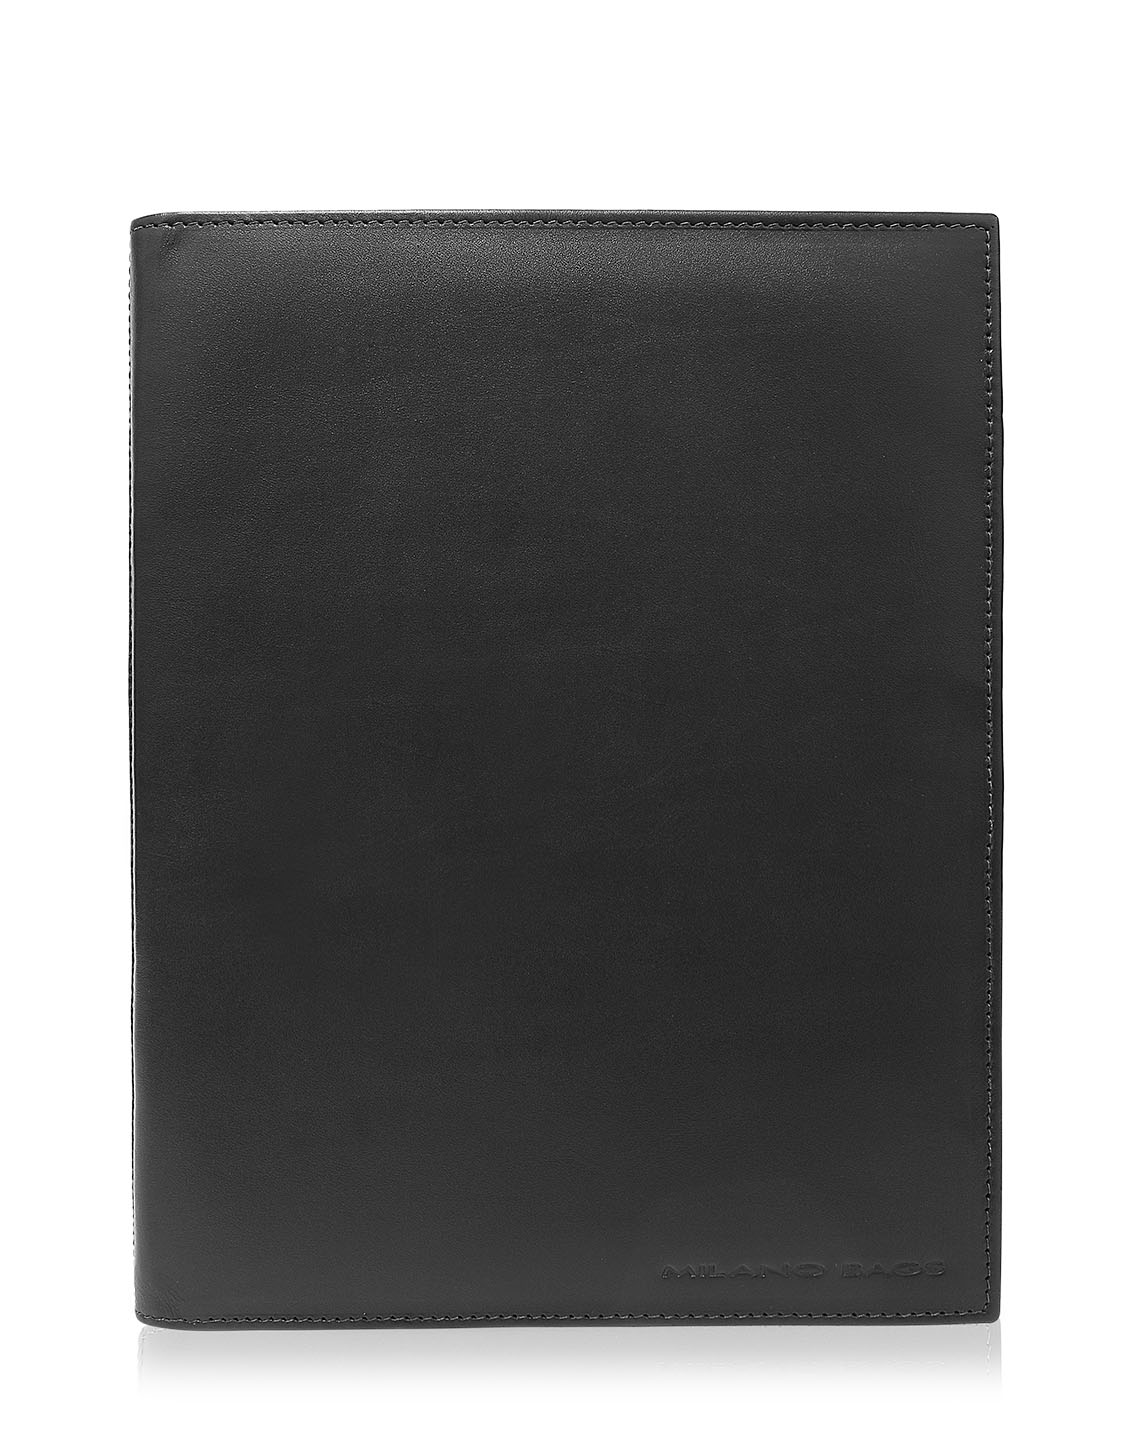 Portafolio DPF-33 Color Negro